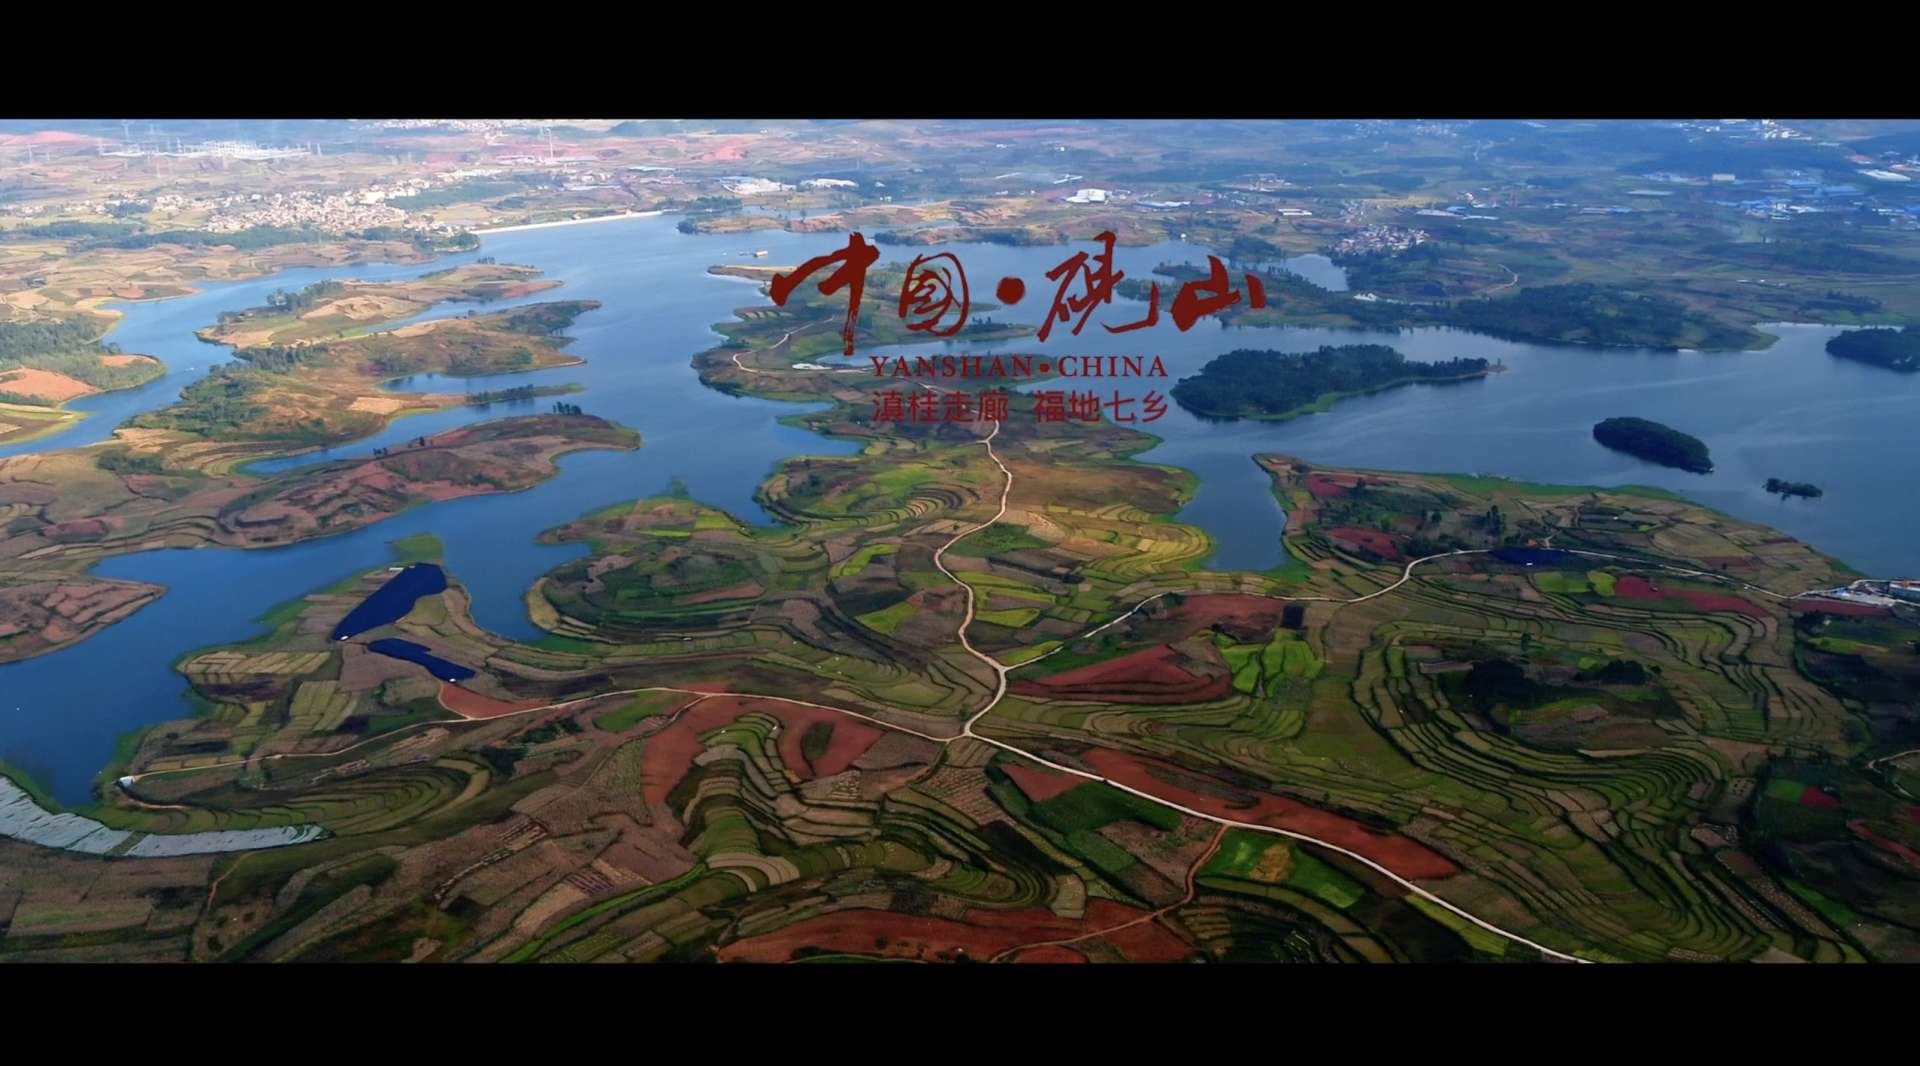 砚山县宣传片机场广告“现代发展篇”